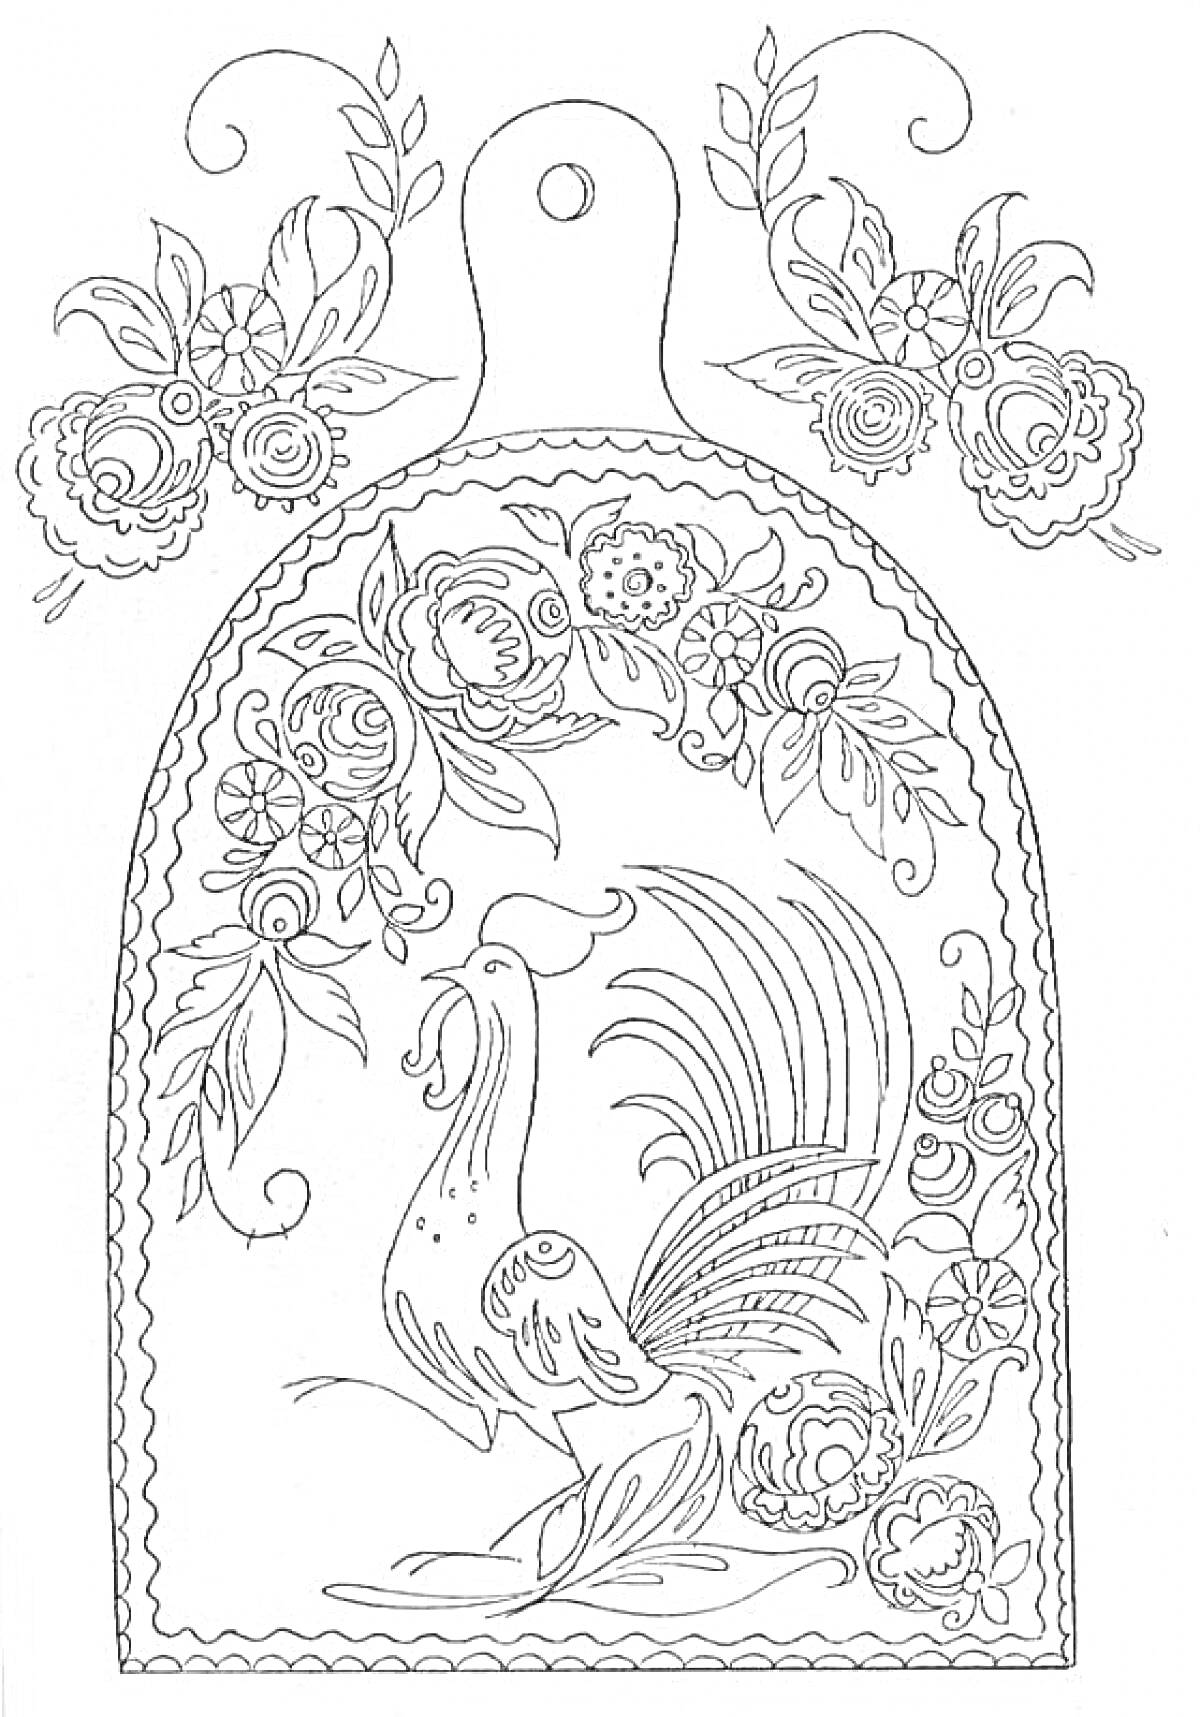 Хохломская роспись на разделочной доске с петухом, цветами и листьями